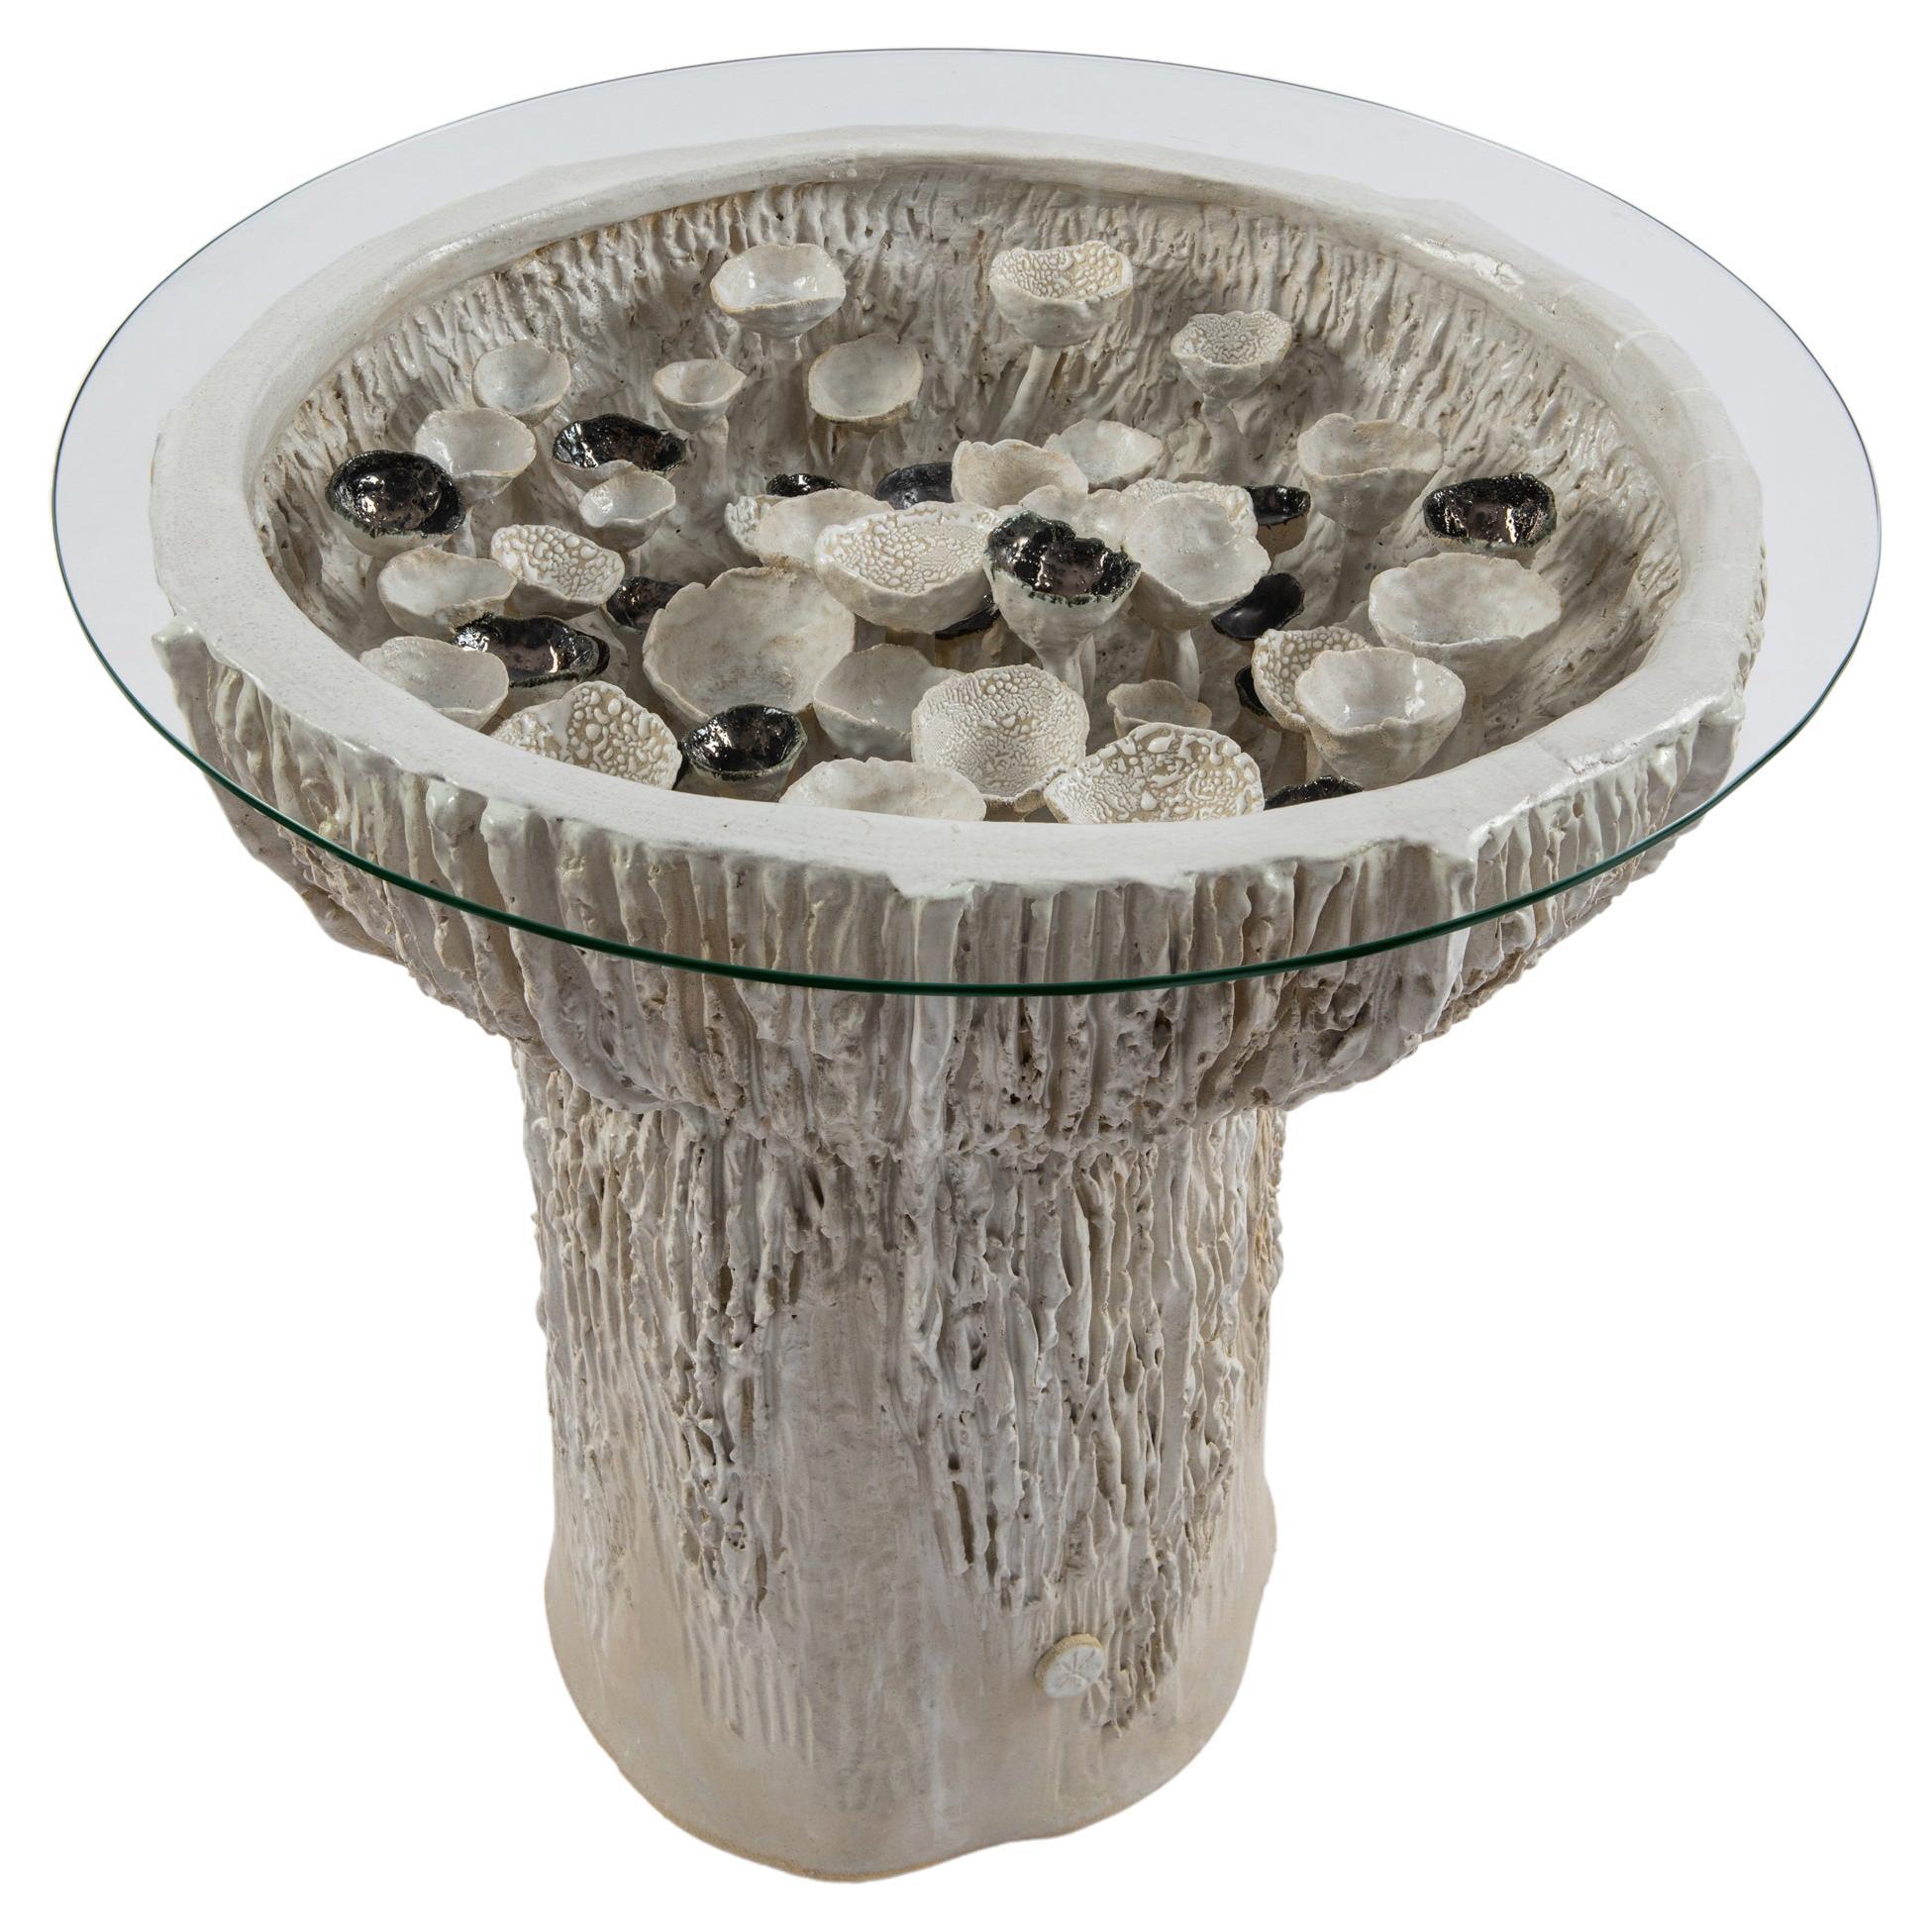 Trombetta-Tisch aus glasierter Keramik und Steingut von Trish DeMasi